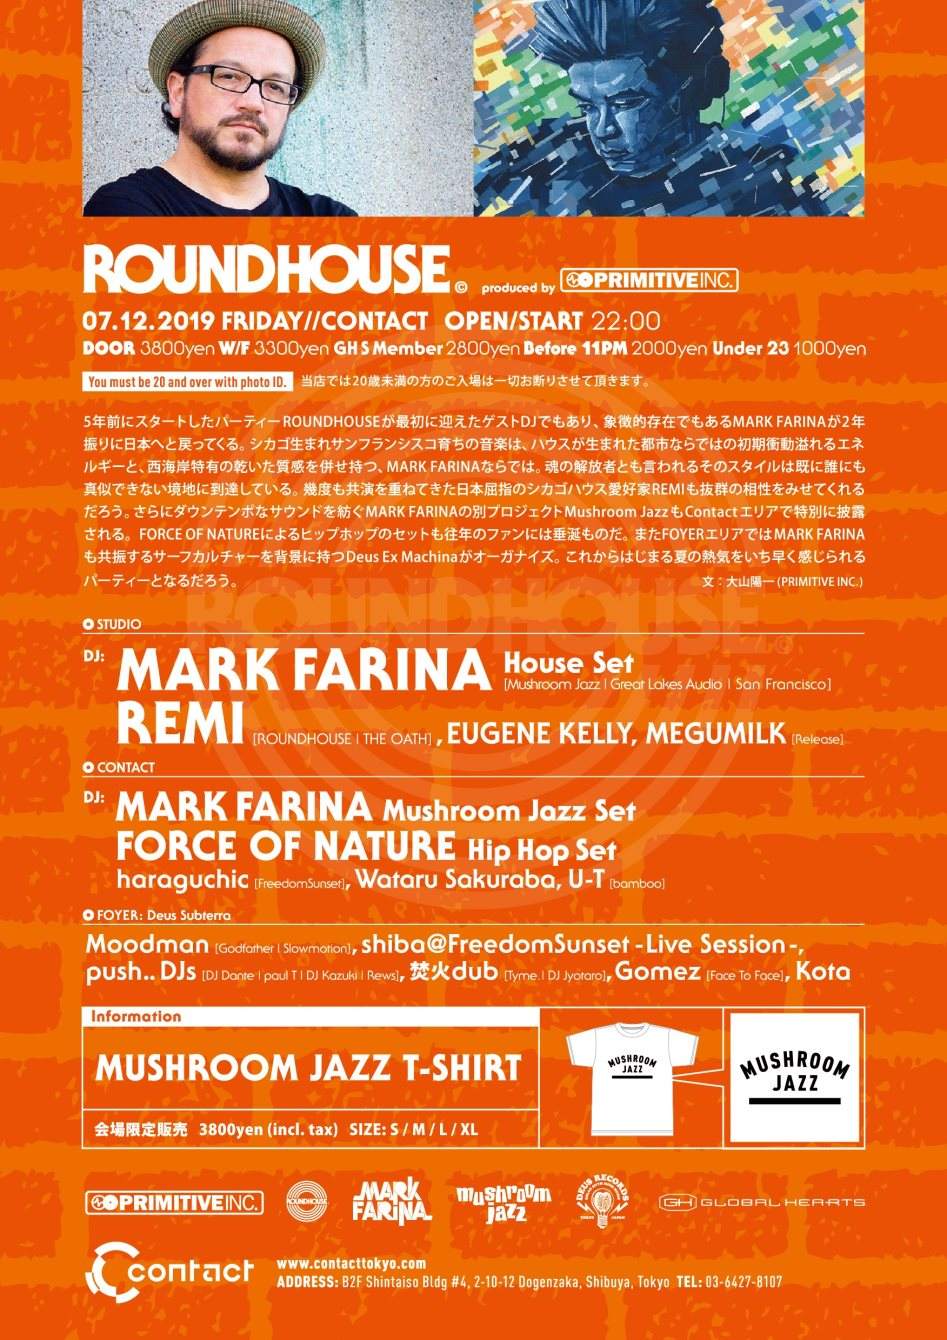 Roundhouse Feat. Mark Farina - Página trasera